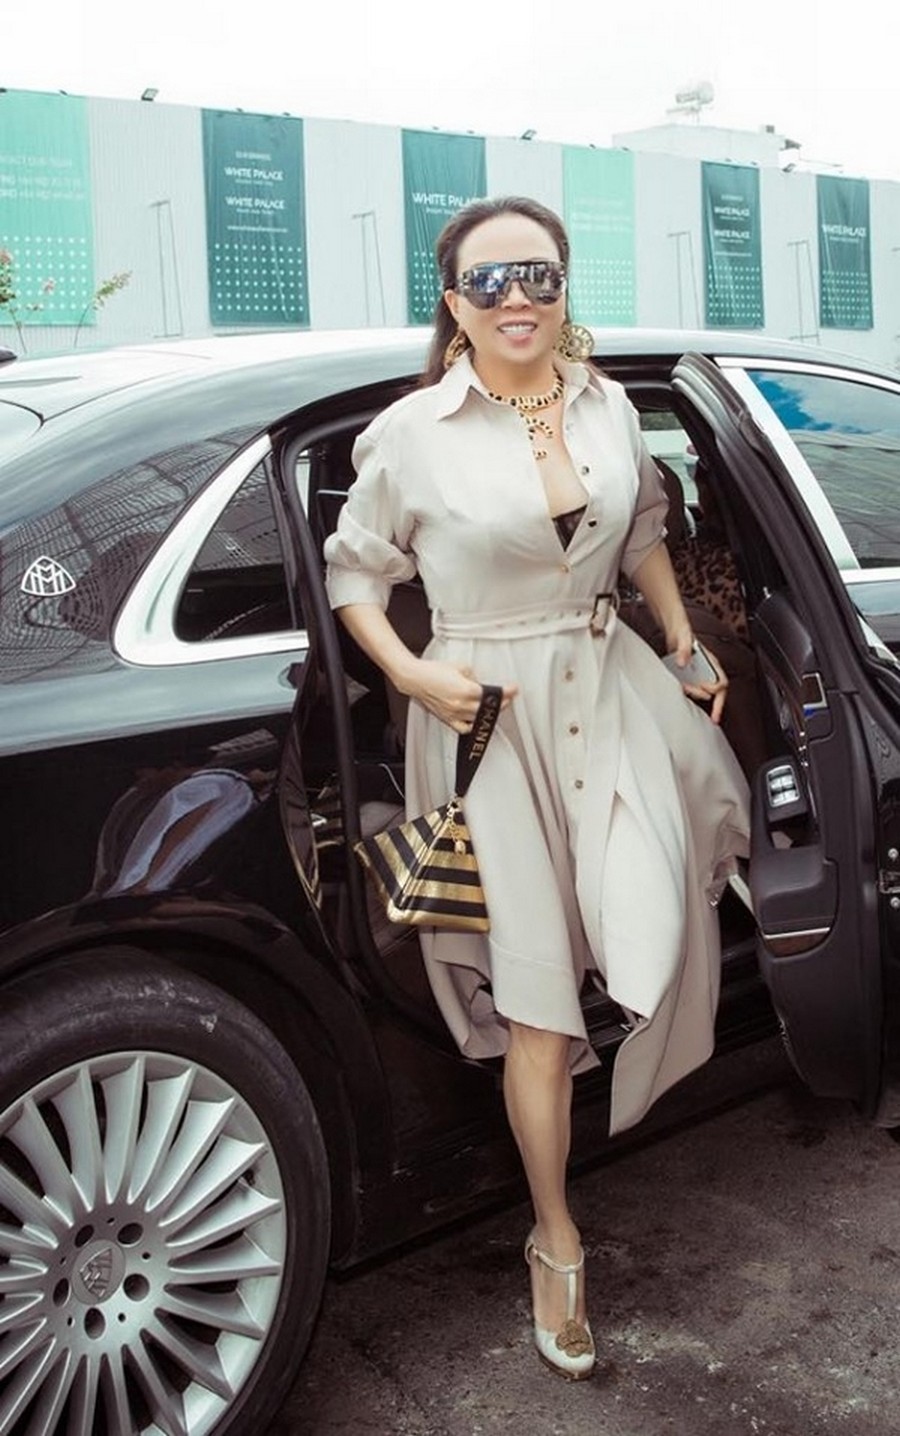  
Trong sự kiện thời trang hồi giữa 2019, Phượng Chanel cũng góp mặt với cả bộ phụ kiện đến từ nhà mốt Pháp. Phối màu kém nổi bật cùng kiểu dáng không phù hợp khiến doanh nhân "lu mờ" giữa dàn người đẹp Việt. (Ảnh: FBNV)